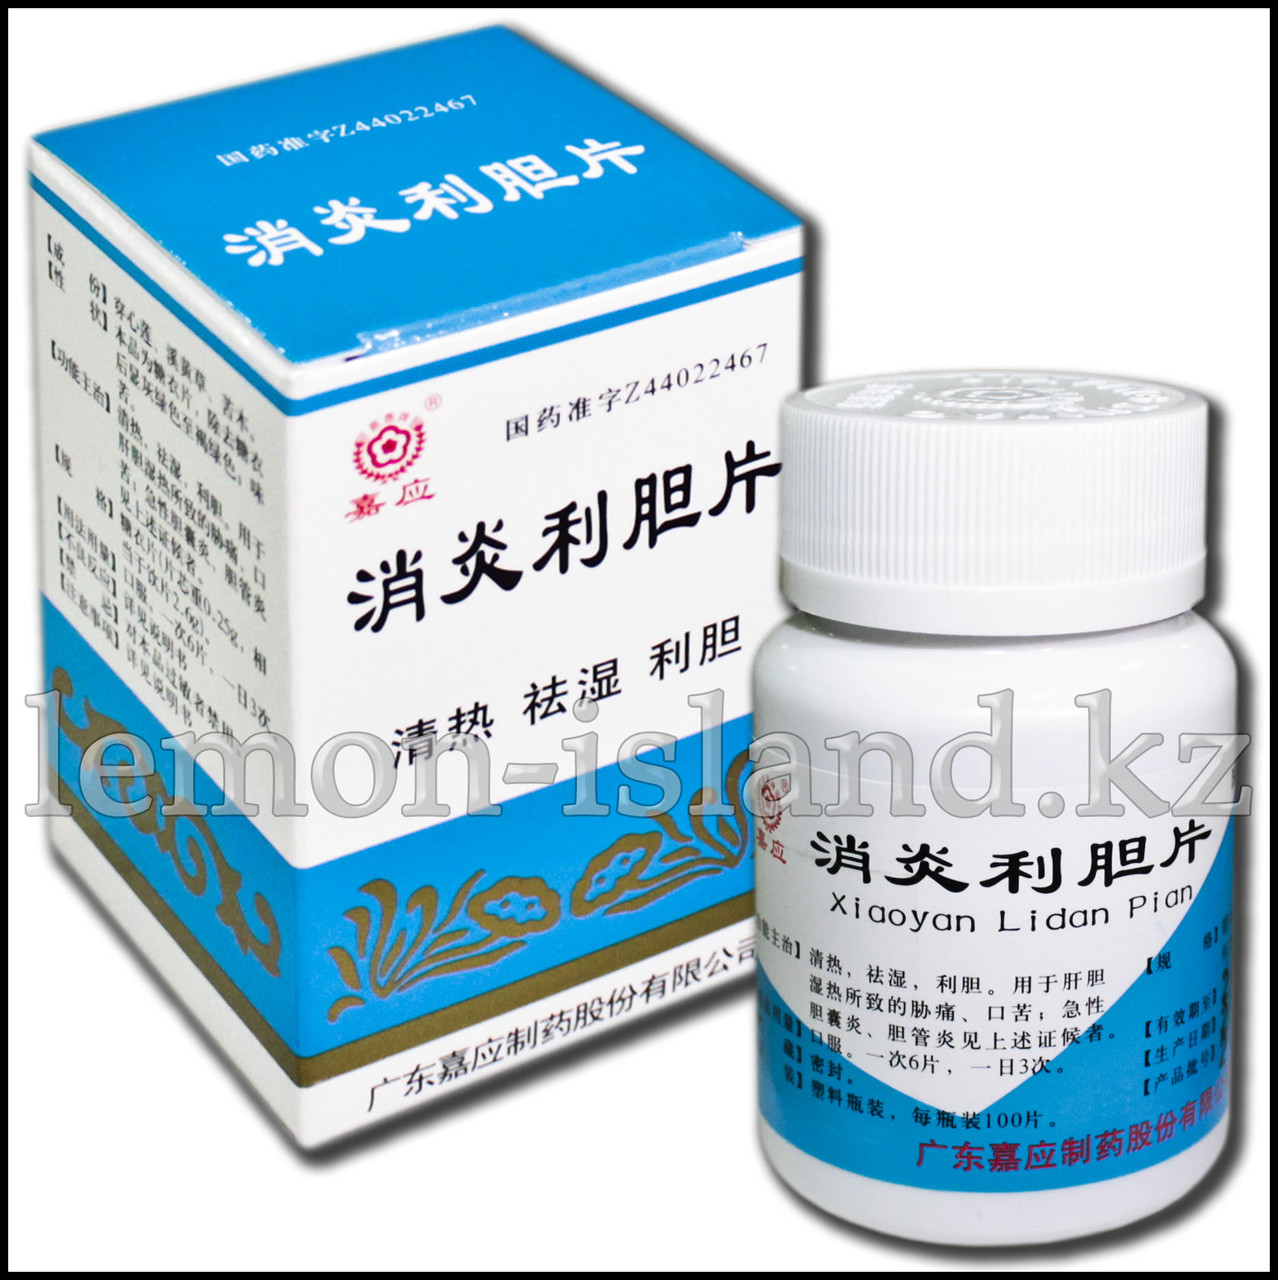 Таблетки "Лидань" (Xiaoyan Lidan Pian) для лечения воспалений желчного пузыря и чистки печени.